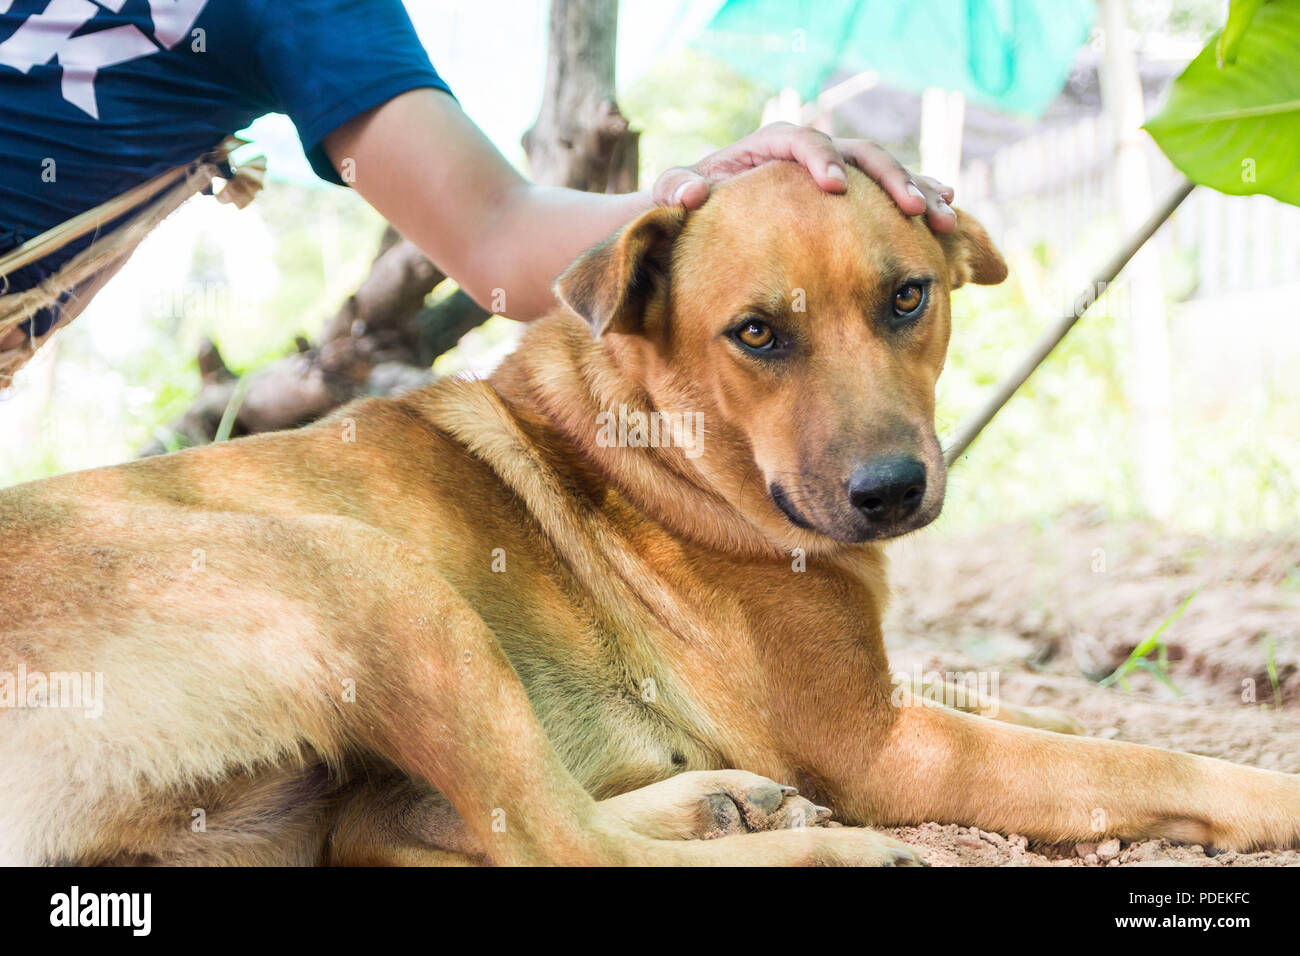 Tailandia folk, este perro es marrón, saludable y respetuosa con las personas cercanas, pero si extraños vienen, fue para intimidar a ladrar inmediatamente. Foto de stock